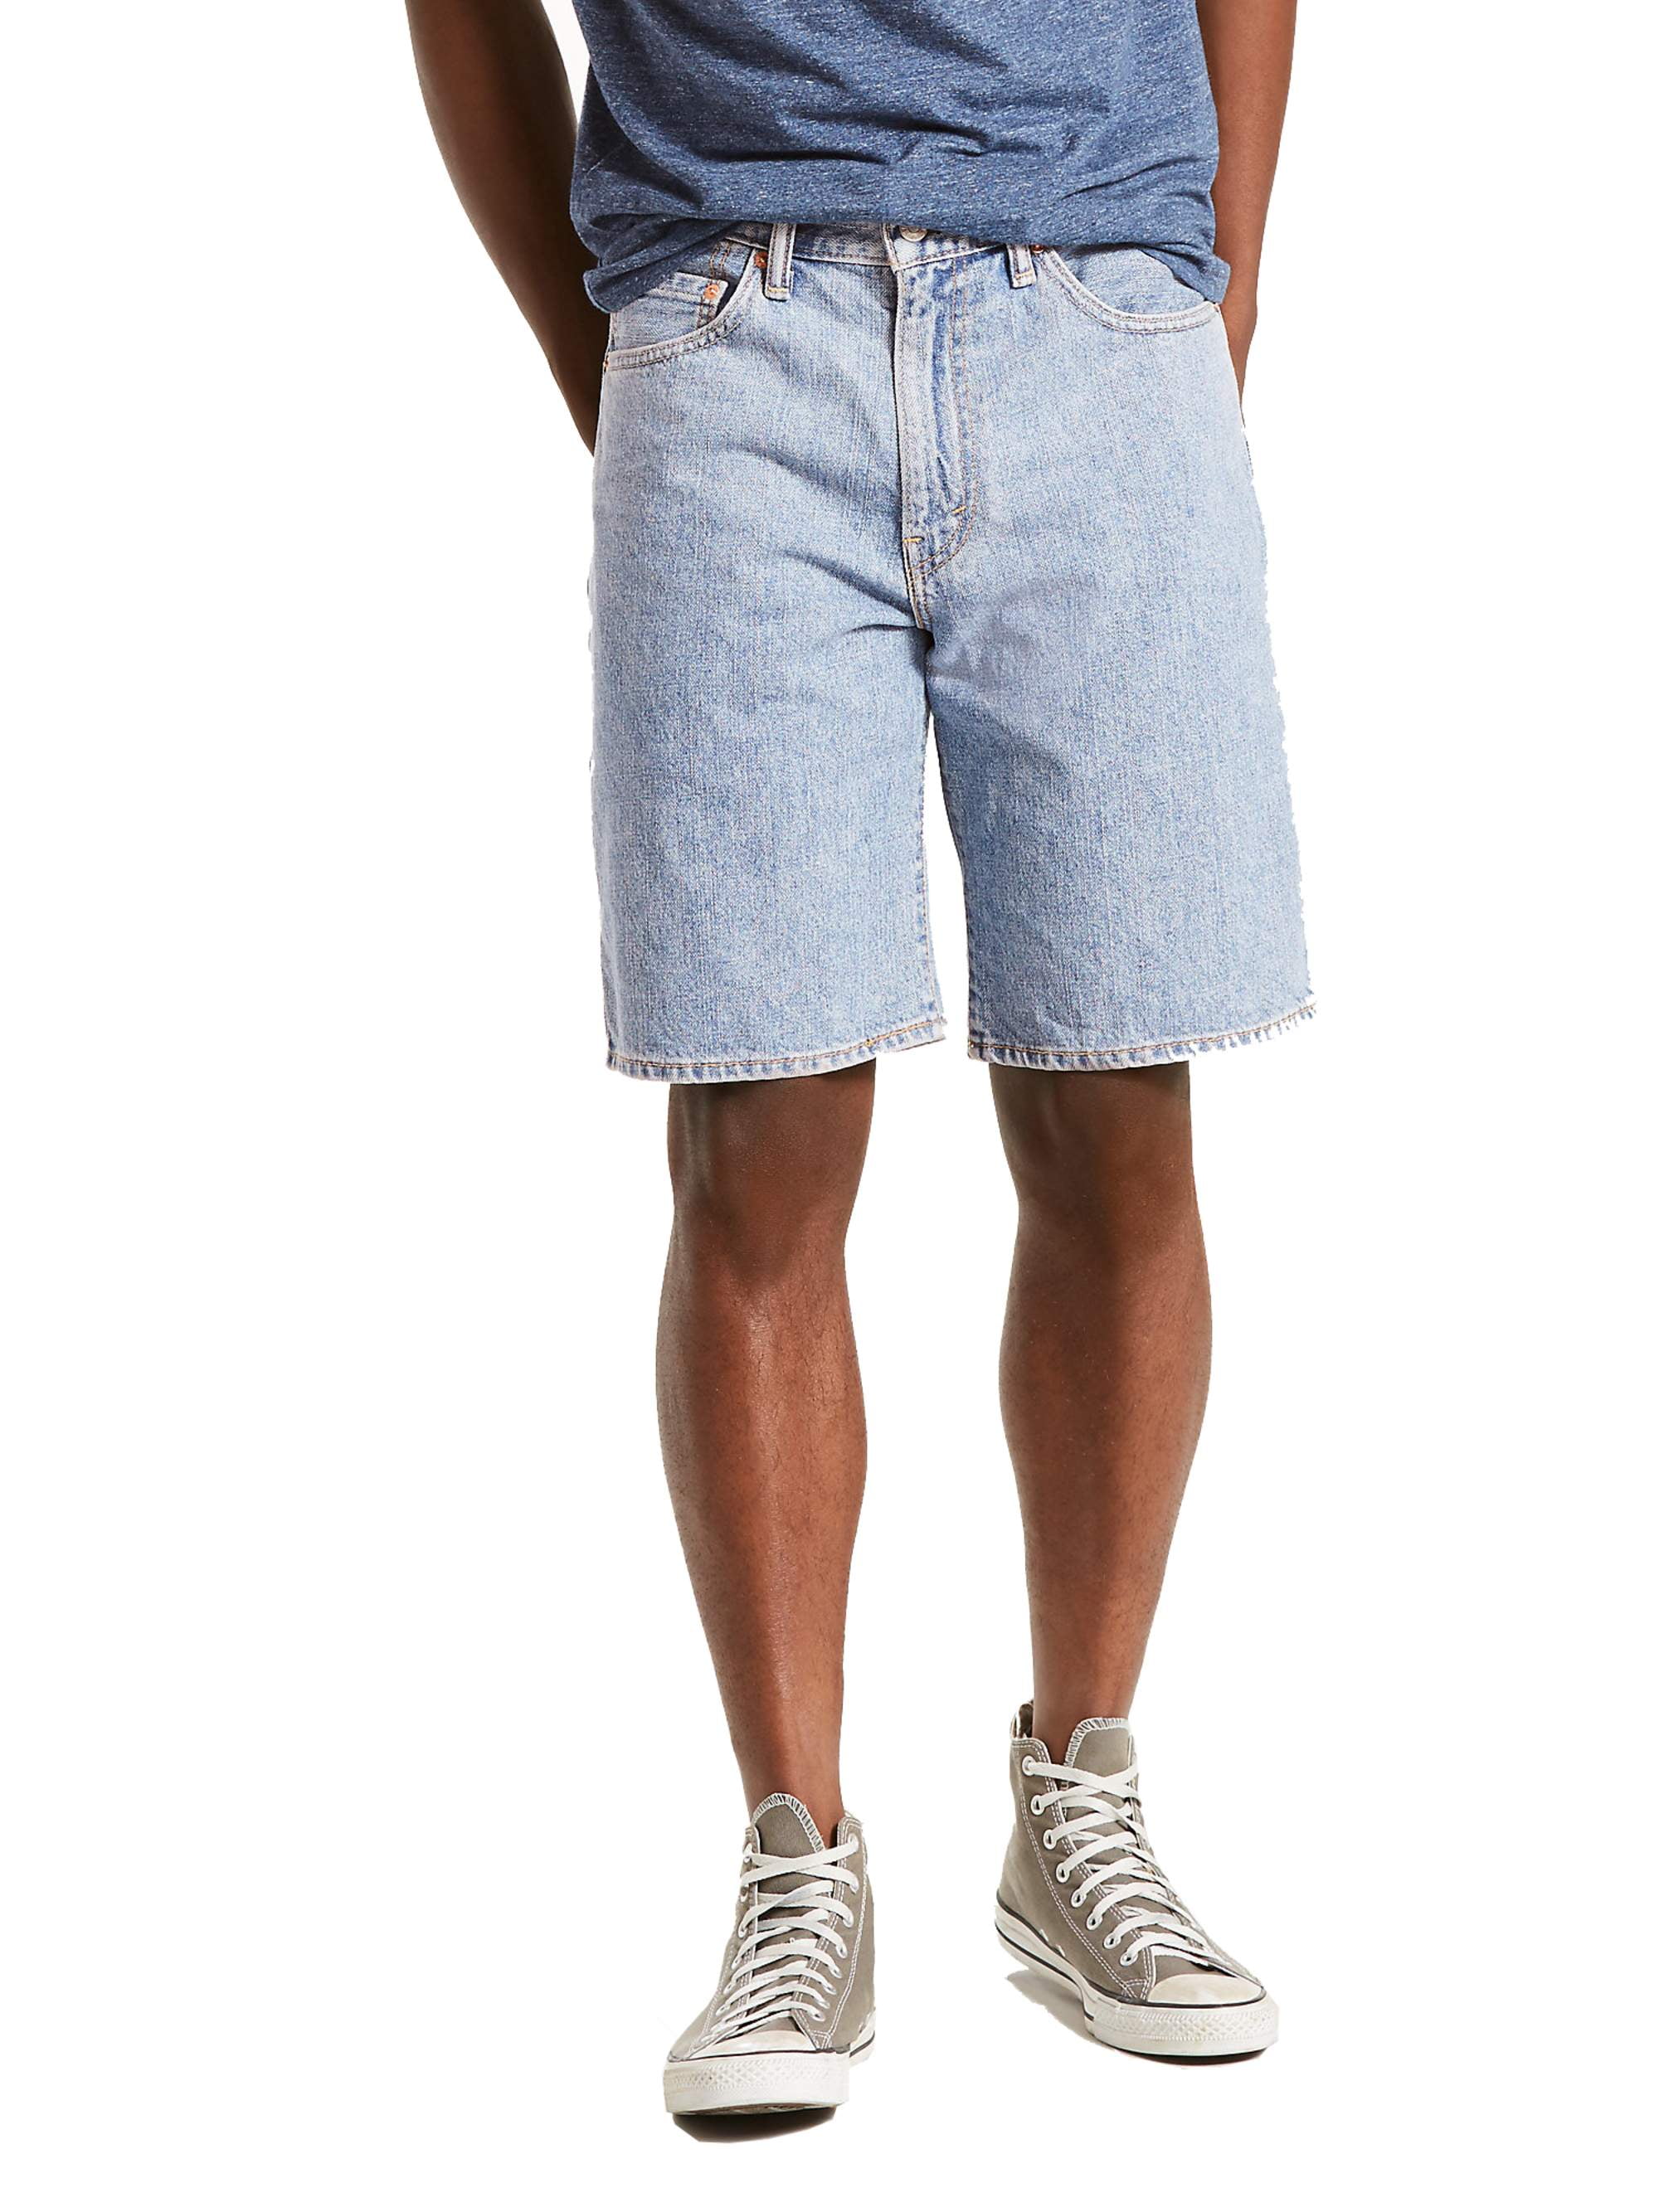 Descubrir 63+ imagen levi’s men’s 550 relaxed fit shorts